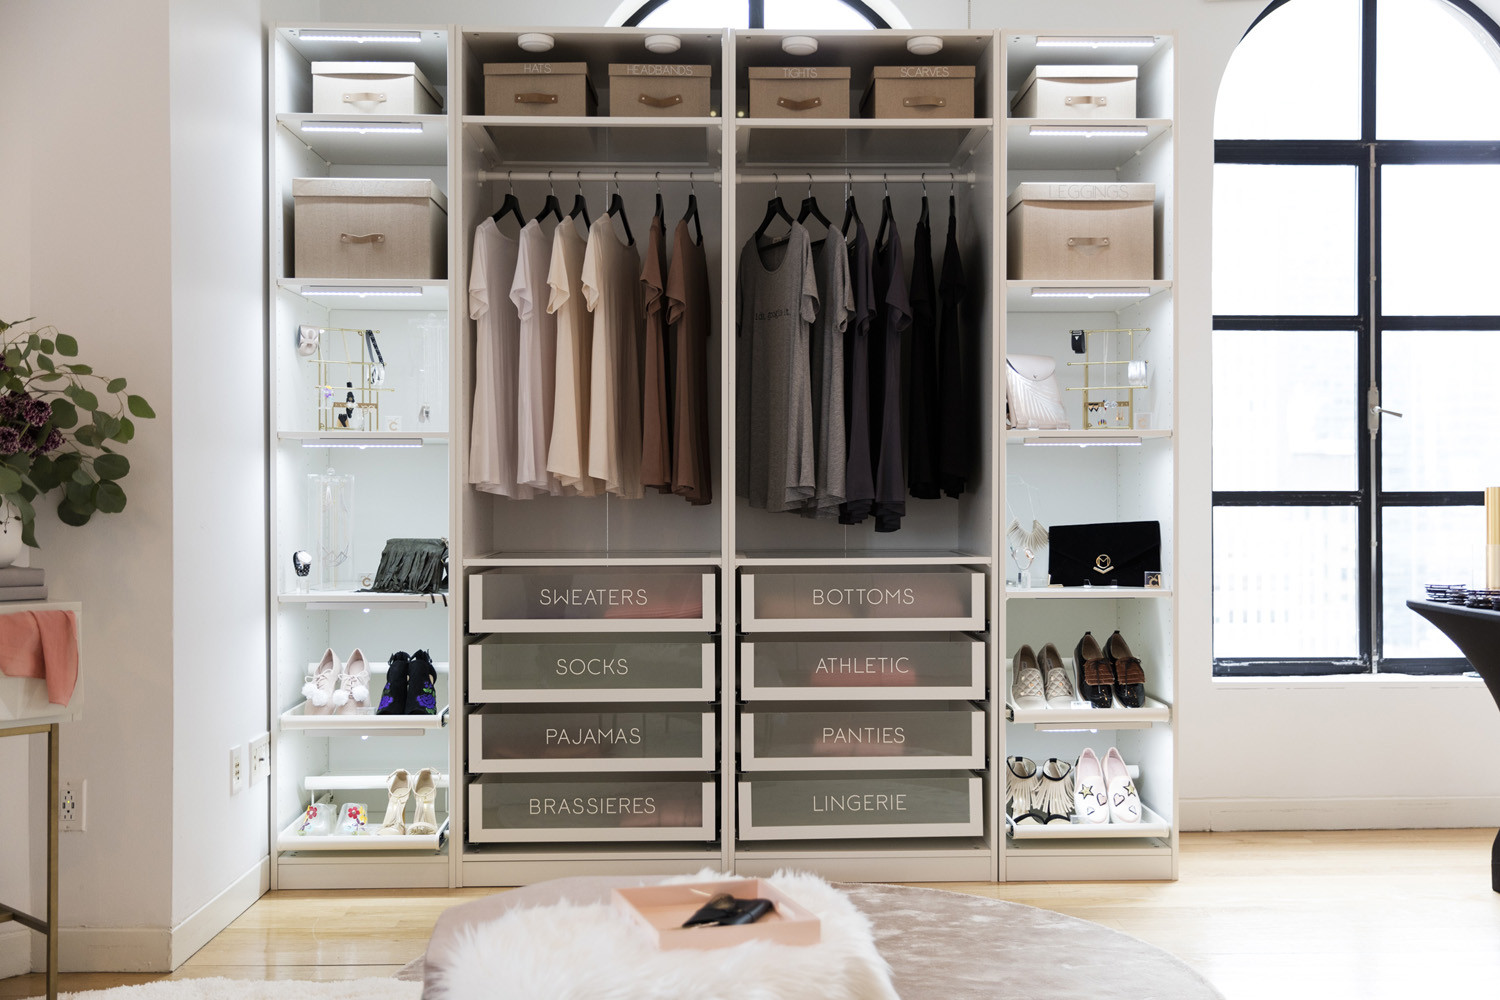 DIY Ways To Organize Your Closet
 Closet Organization – 4 DIY Ideas to Organize your Closet